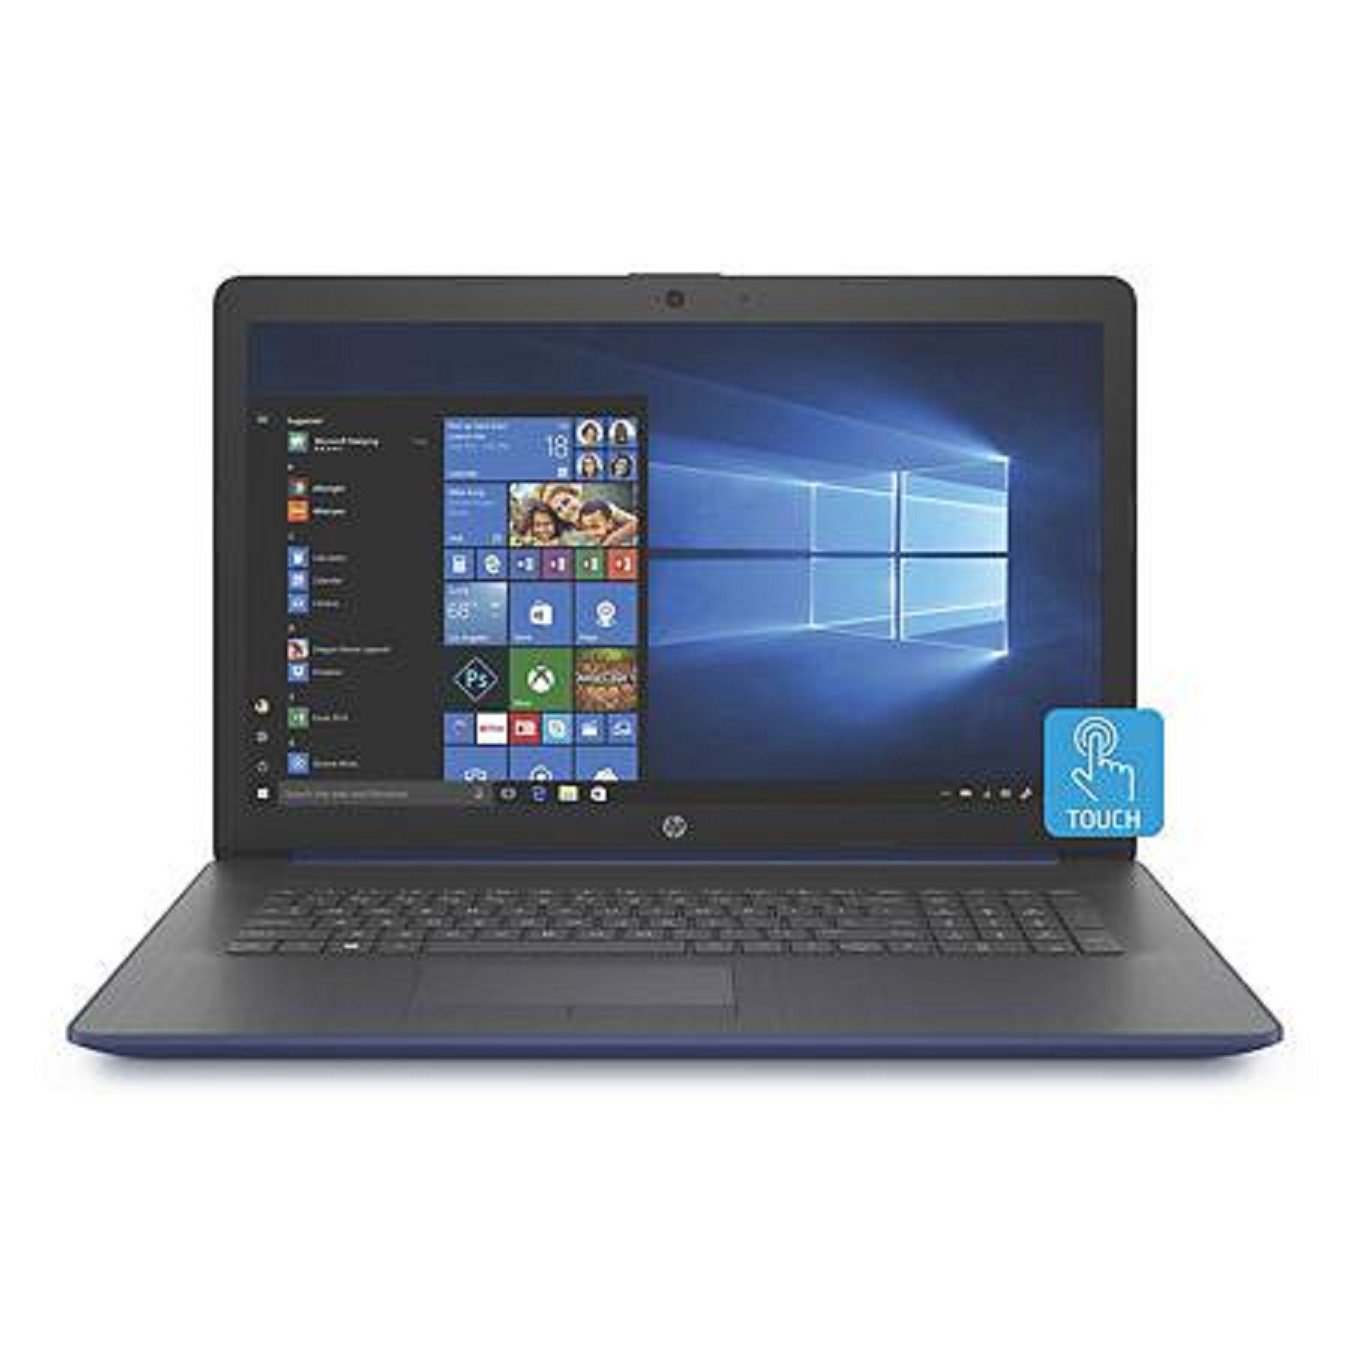 HP 17-BY1956cl 17.3" HD+ Touch i5-8265U 1.6GHz 8GB 256GB SSD W10H Laptop Blue